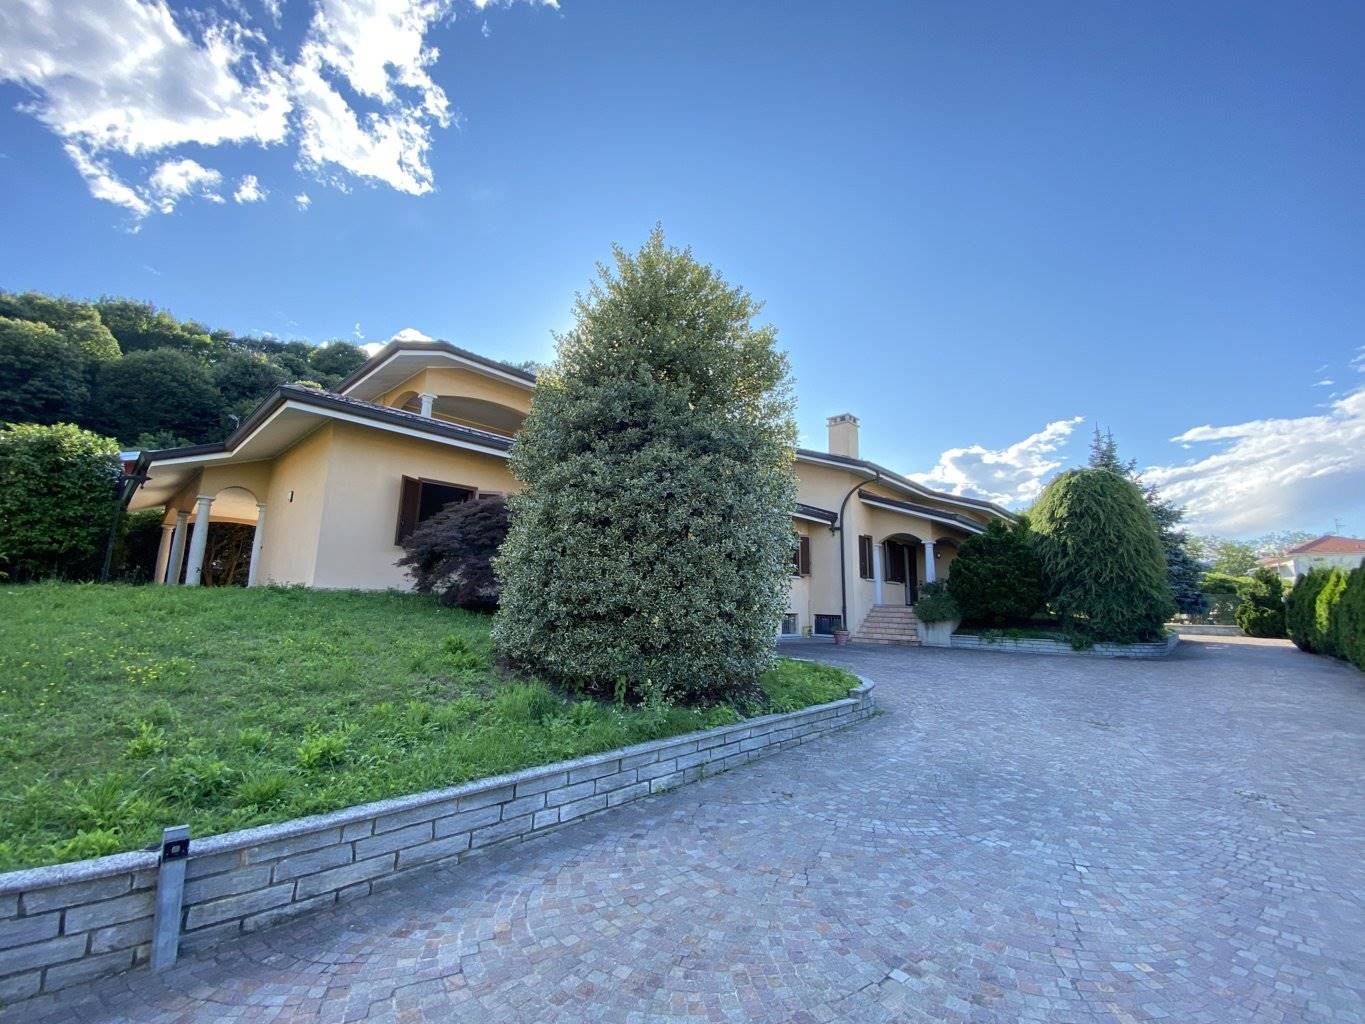 In vendita villa a Gozzano Lago d’Orta provincia di Novara, a soli 14 km da Arona sul Lago Maggiore. PREZZO TRATTABILE. La proprietà in vendita è una villa di 640 mq disposta sui livelli terreno, 